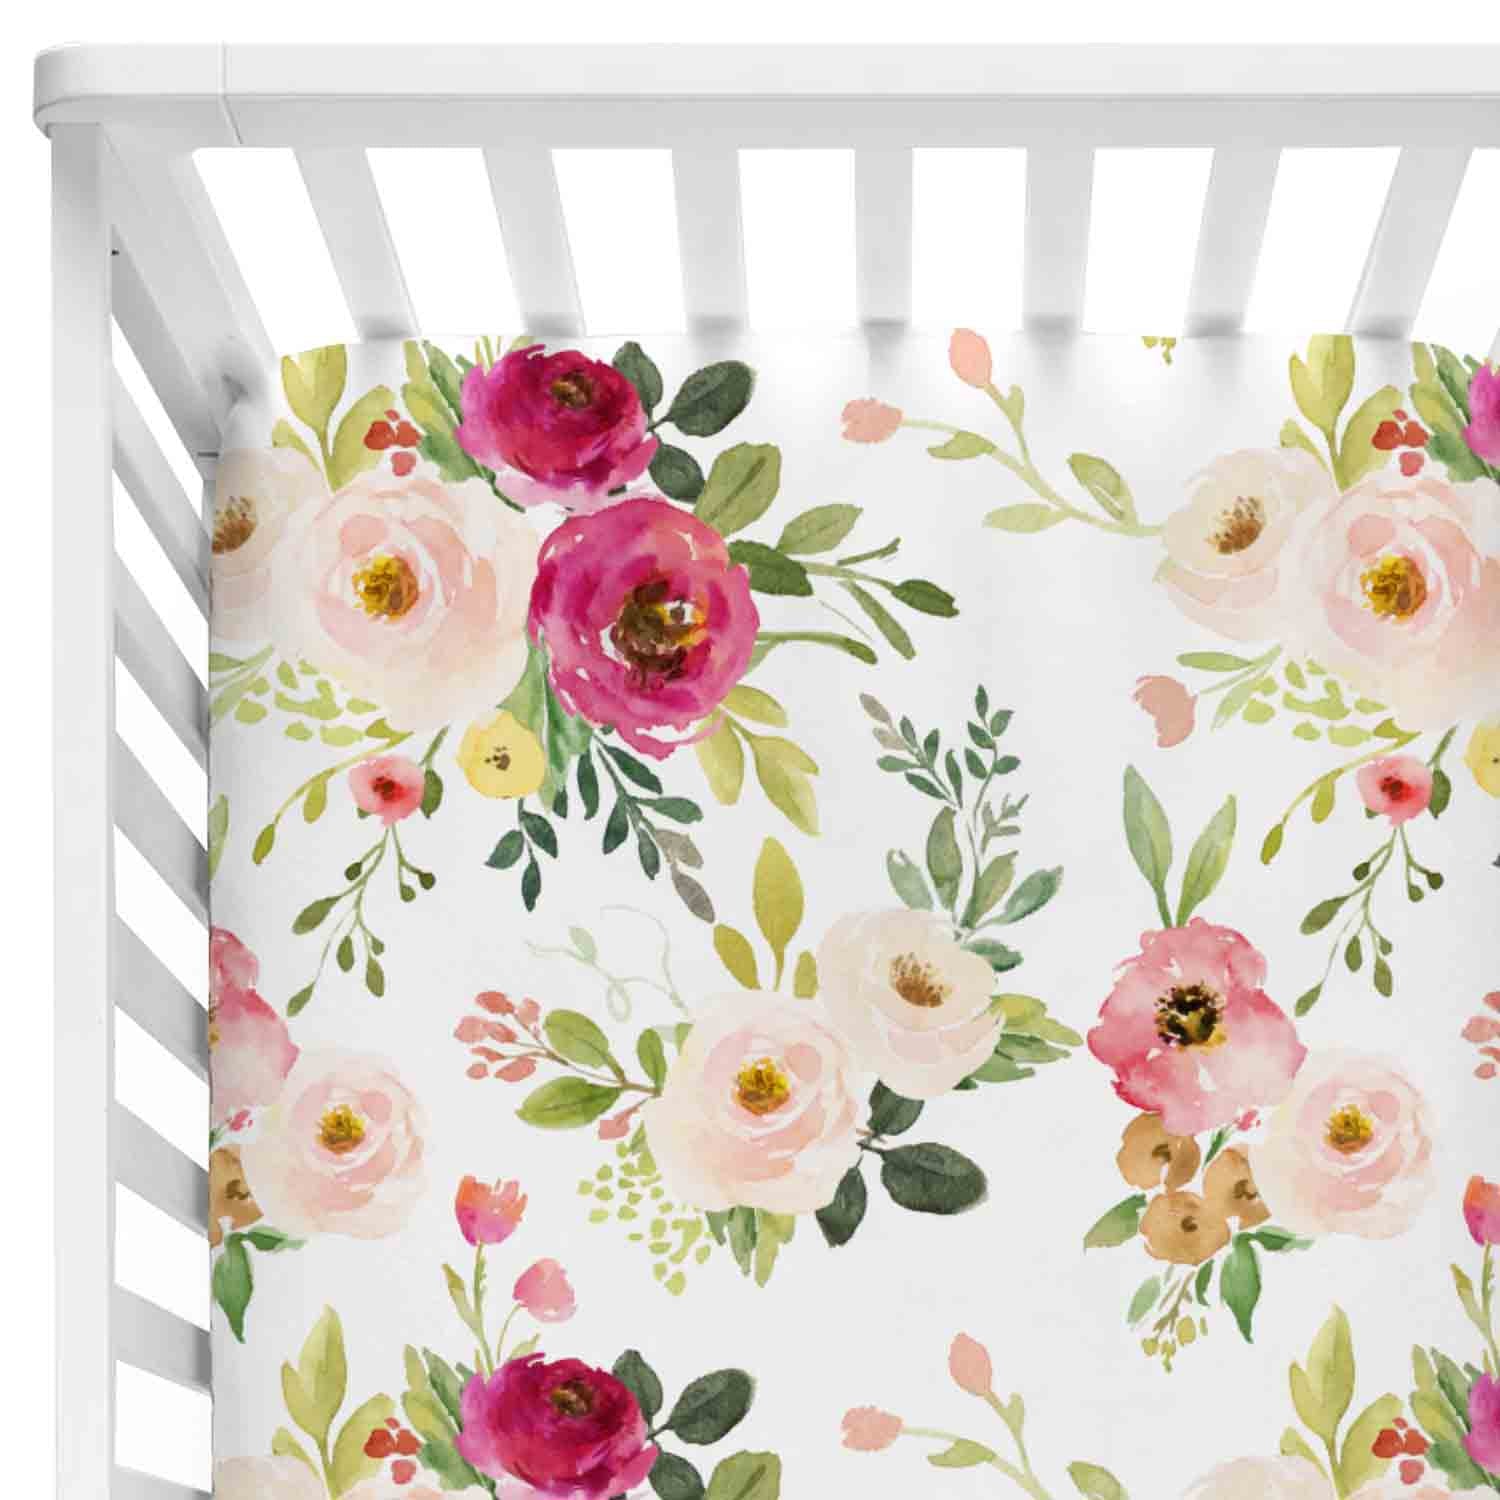 floral crib sheets